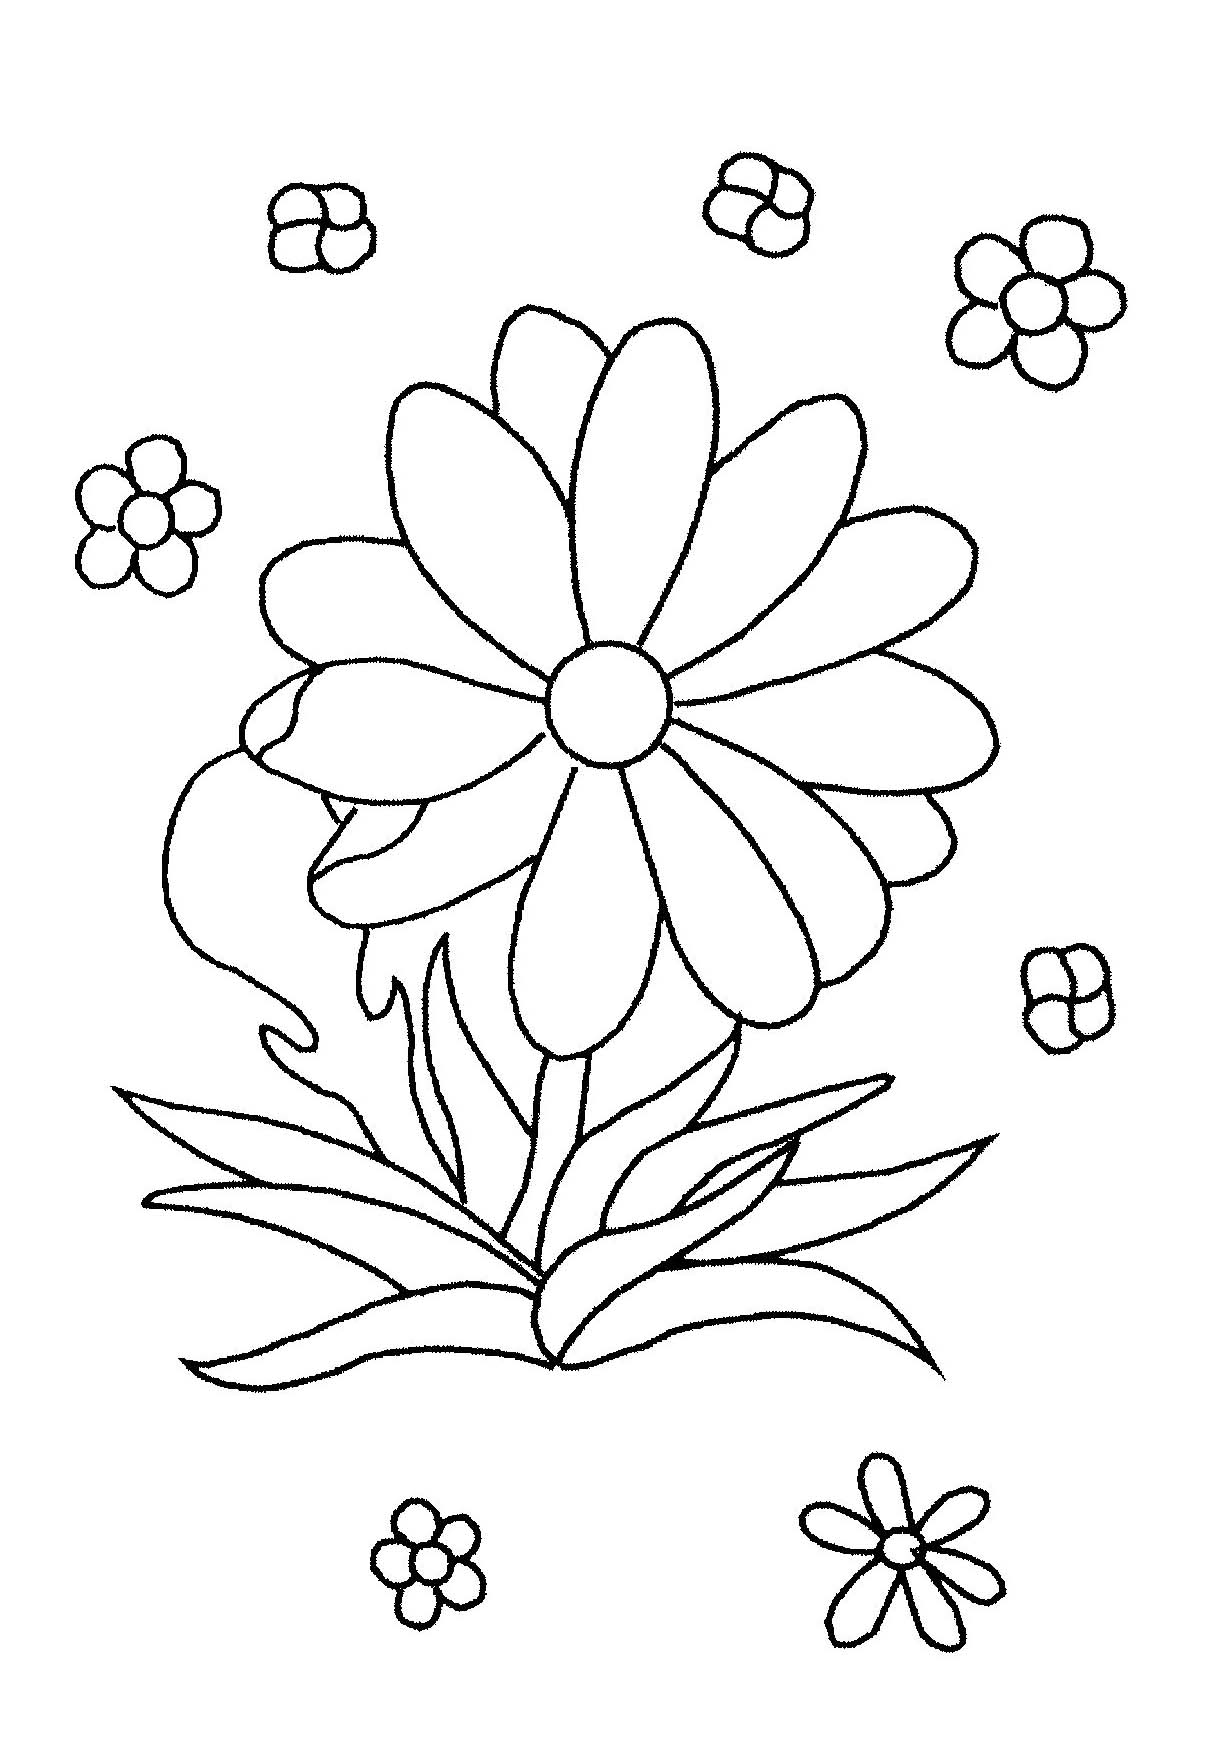 Flor simples para um livro para colorir para crianças pequenas